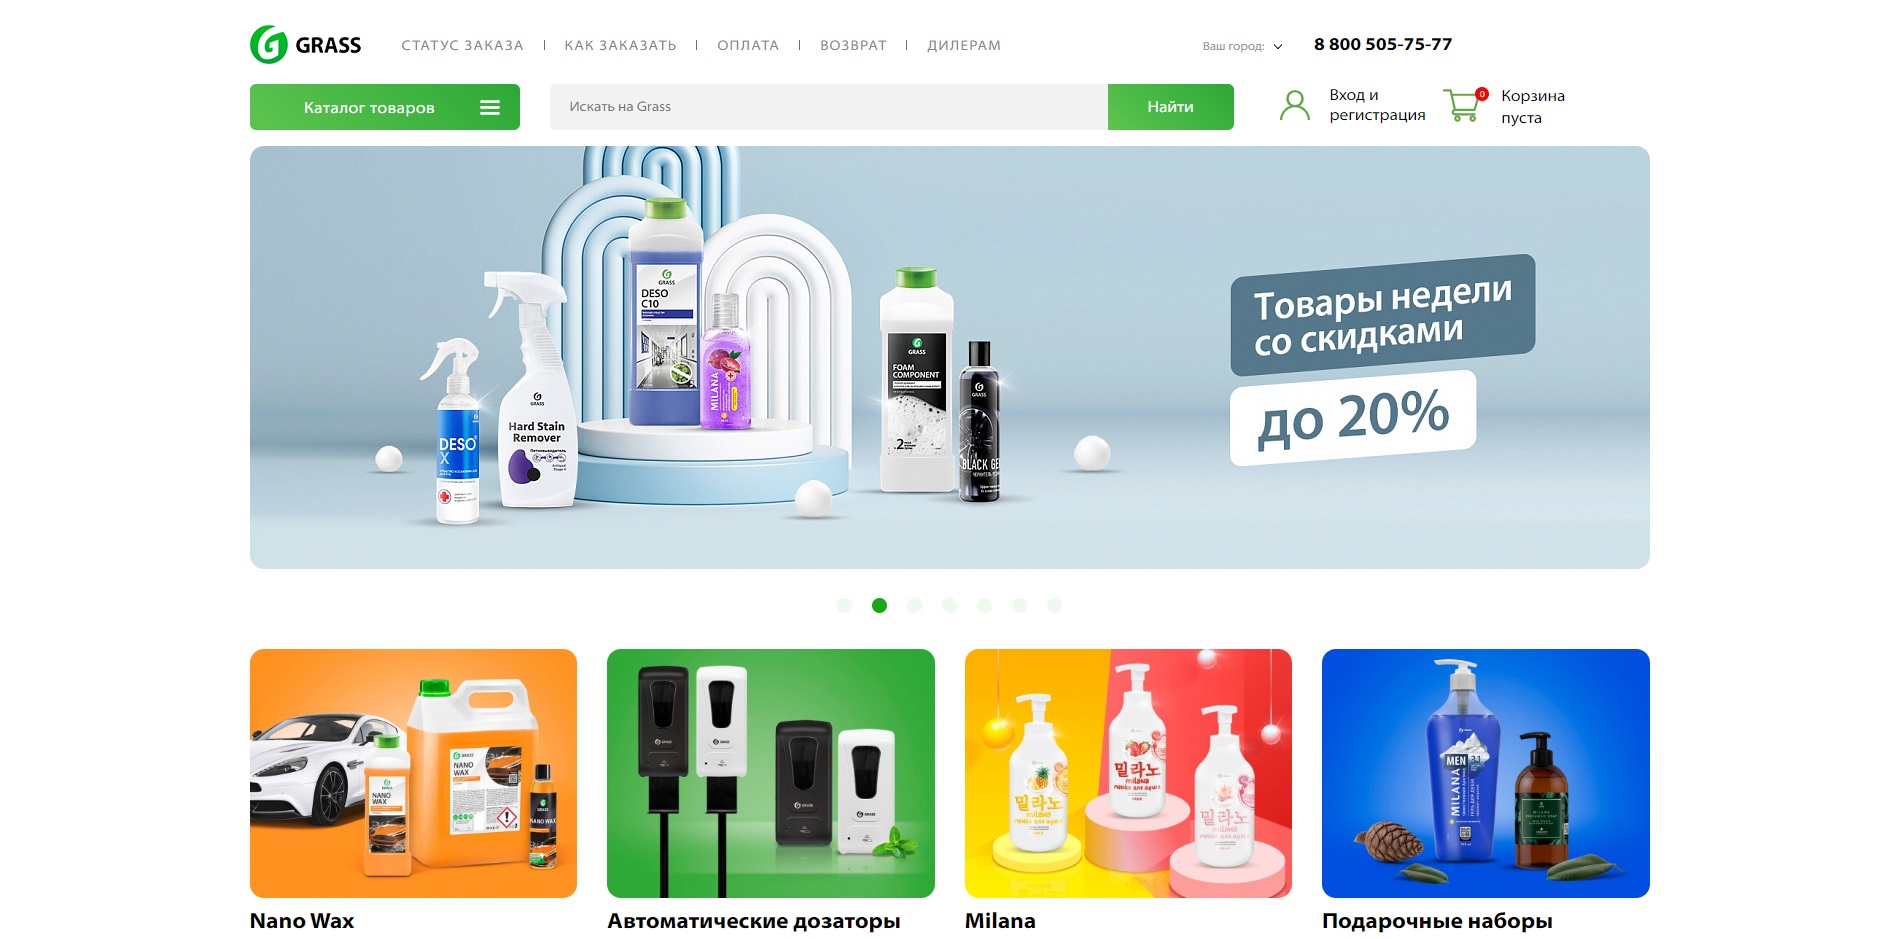 Интернет магазин GRASS - более 600 товаров бытовой химии, авто химии, клининга и автокосметики